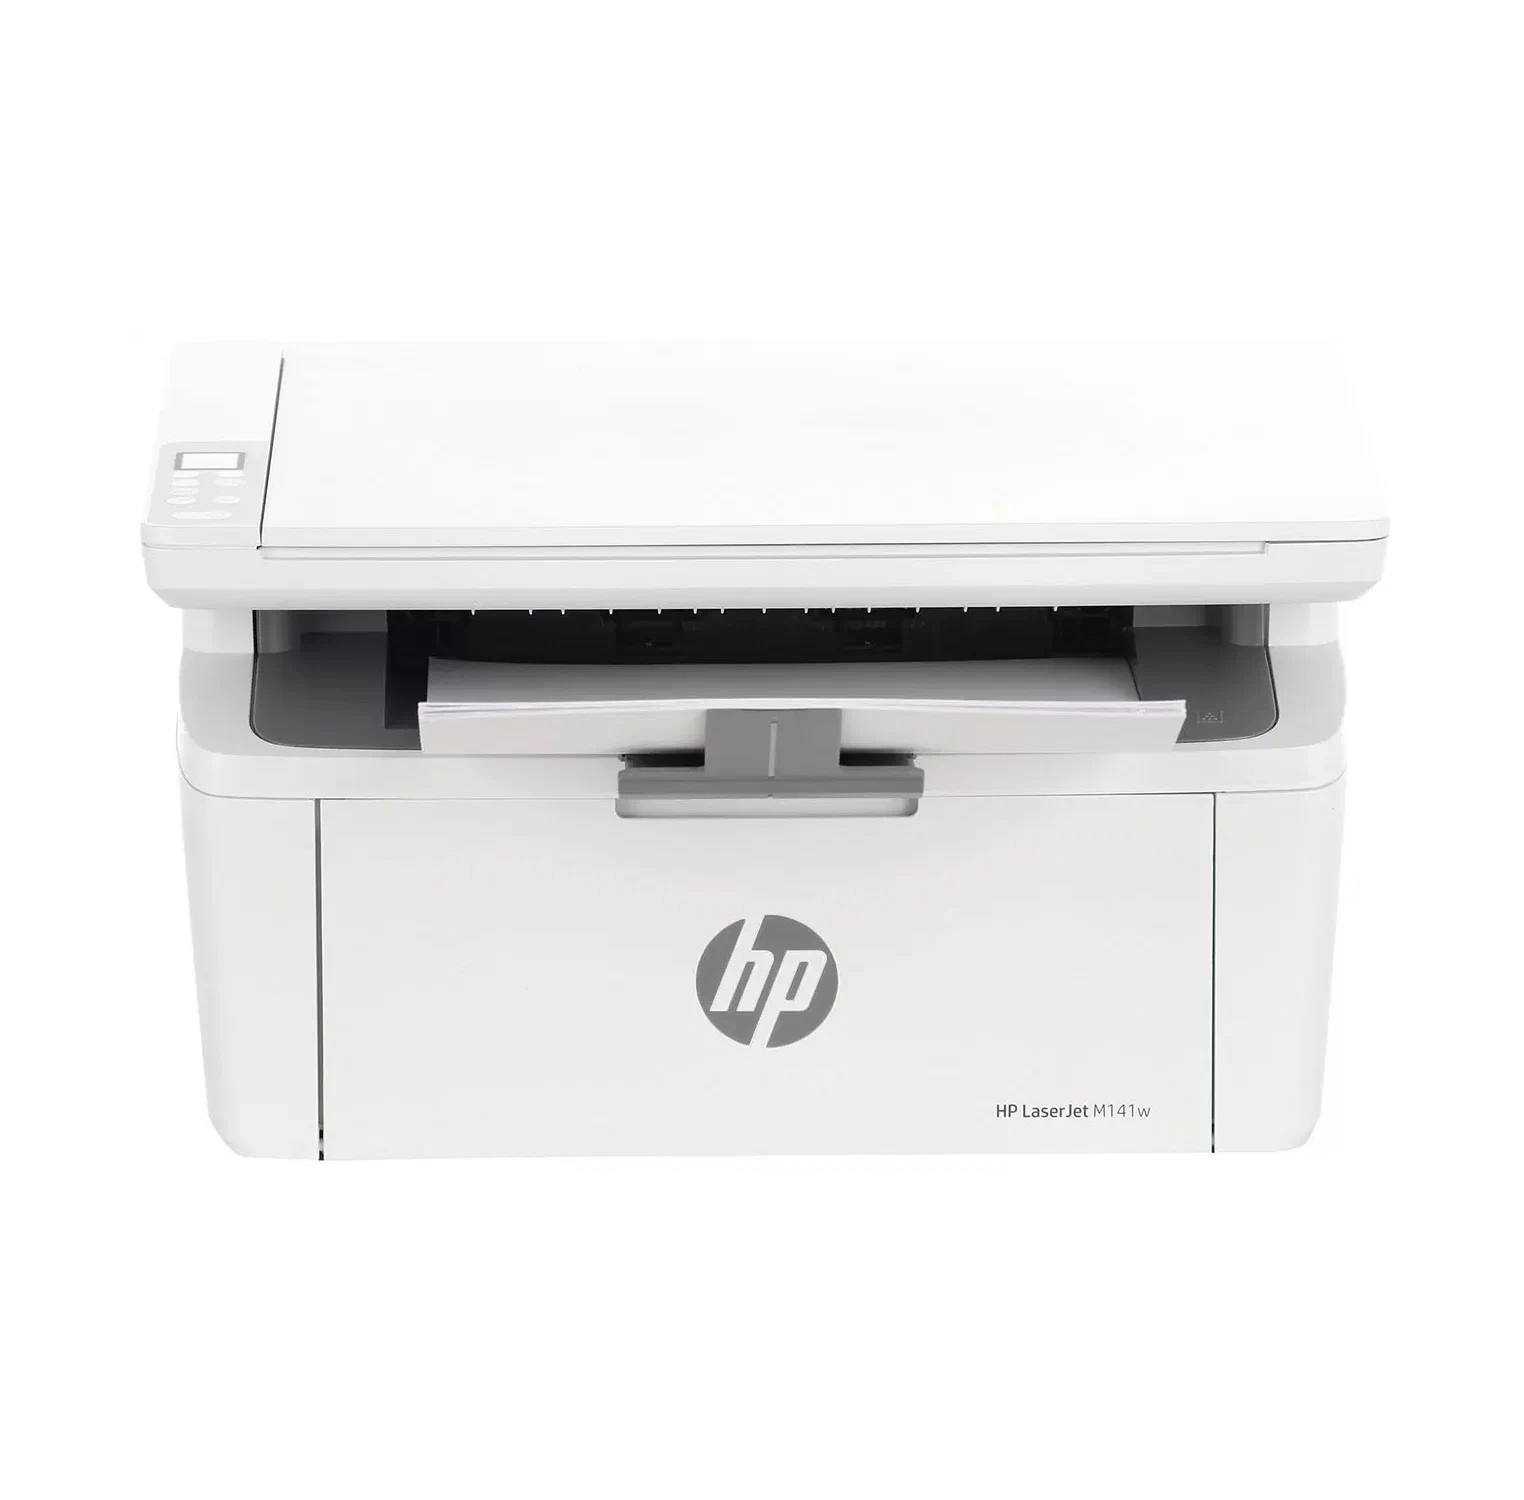 Принтер HP LaserJet M141w (МФУ, лазерный, ч/б, A4) купить